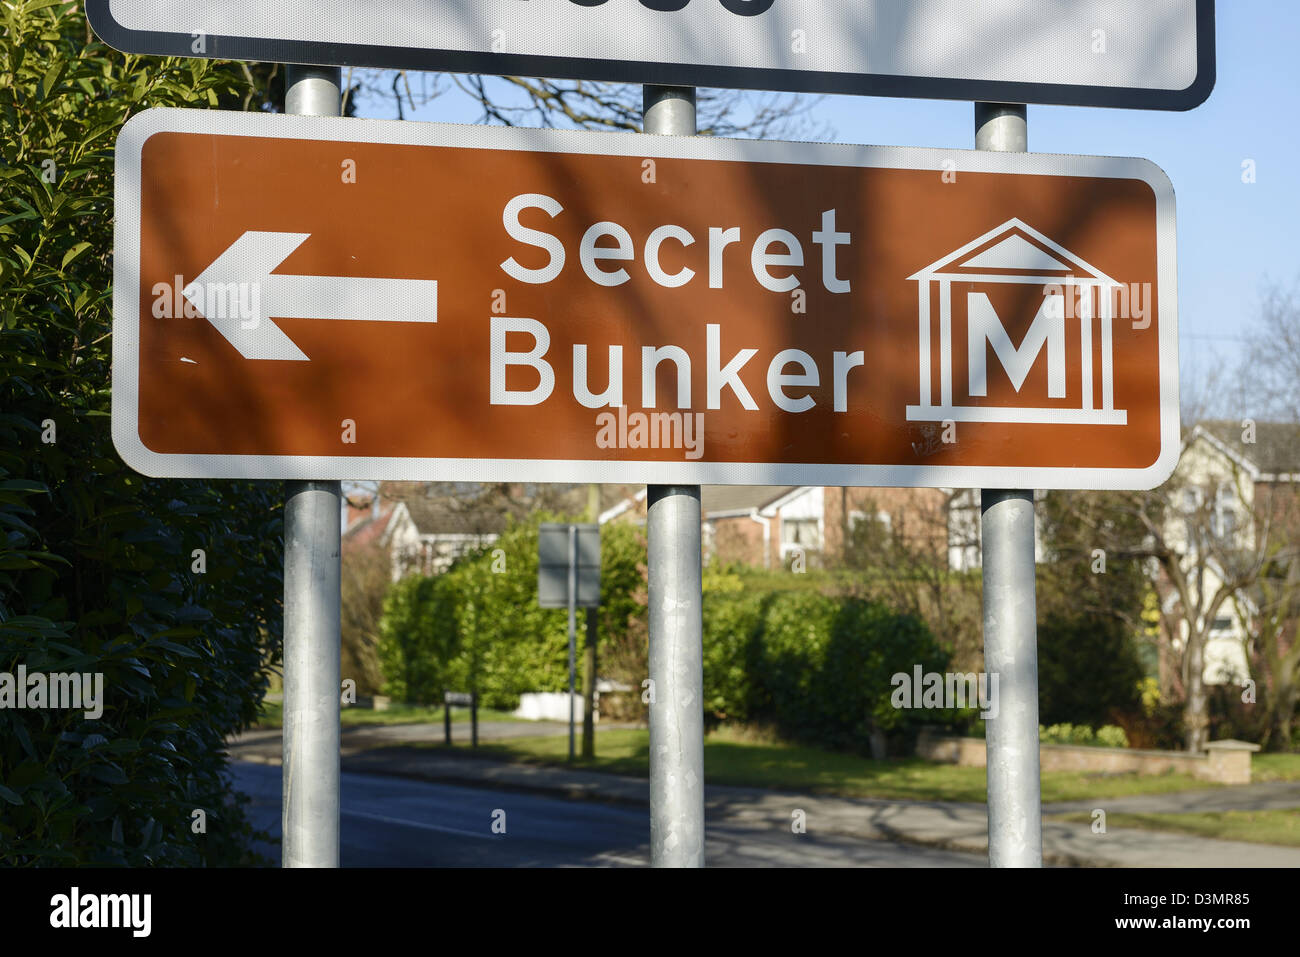 Brown panneau routier indiquant un bunker secret Banque D'Images